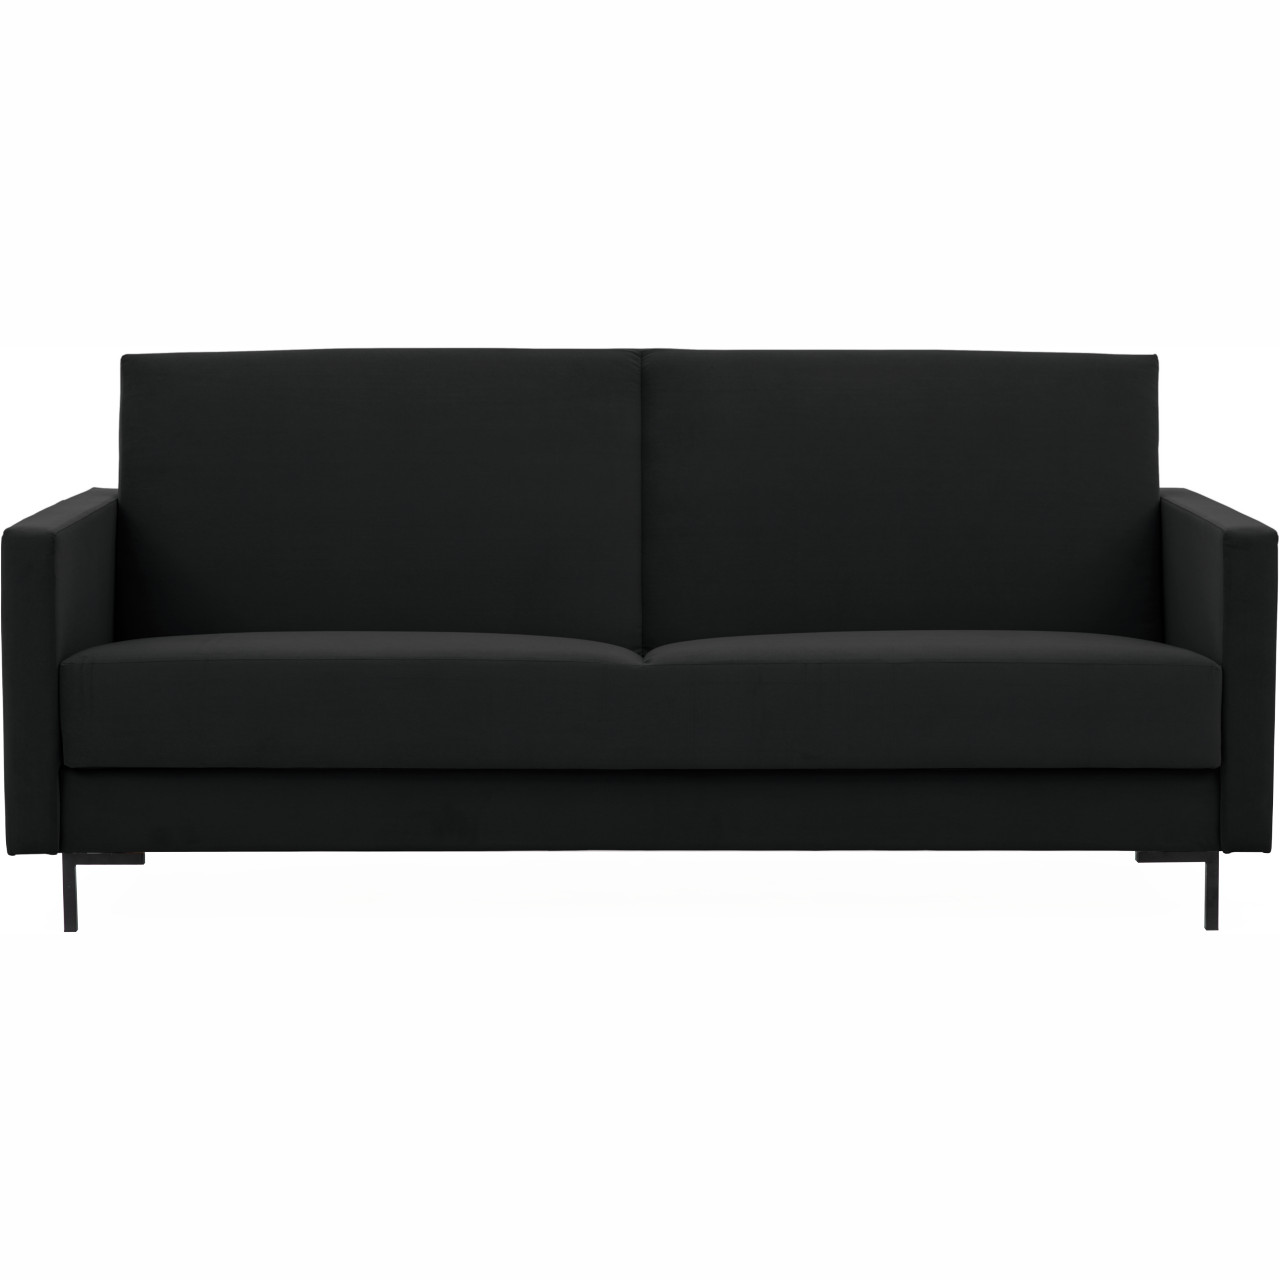 Sofa SOLVO B madone 17047 black